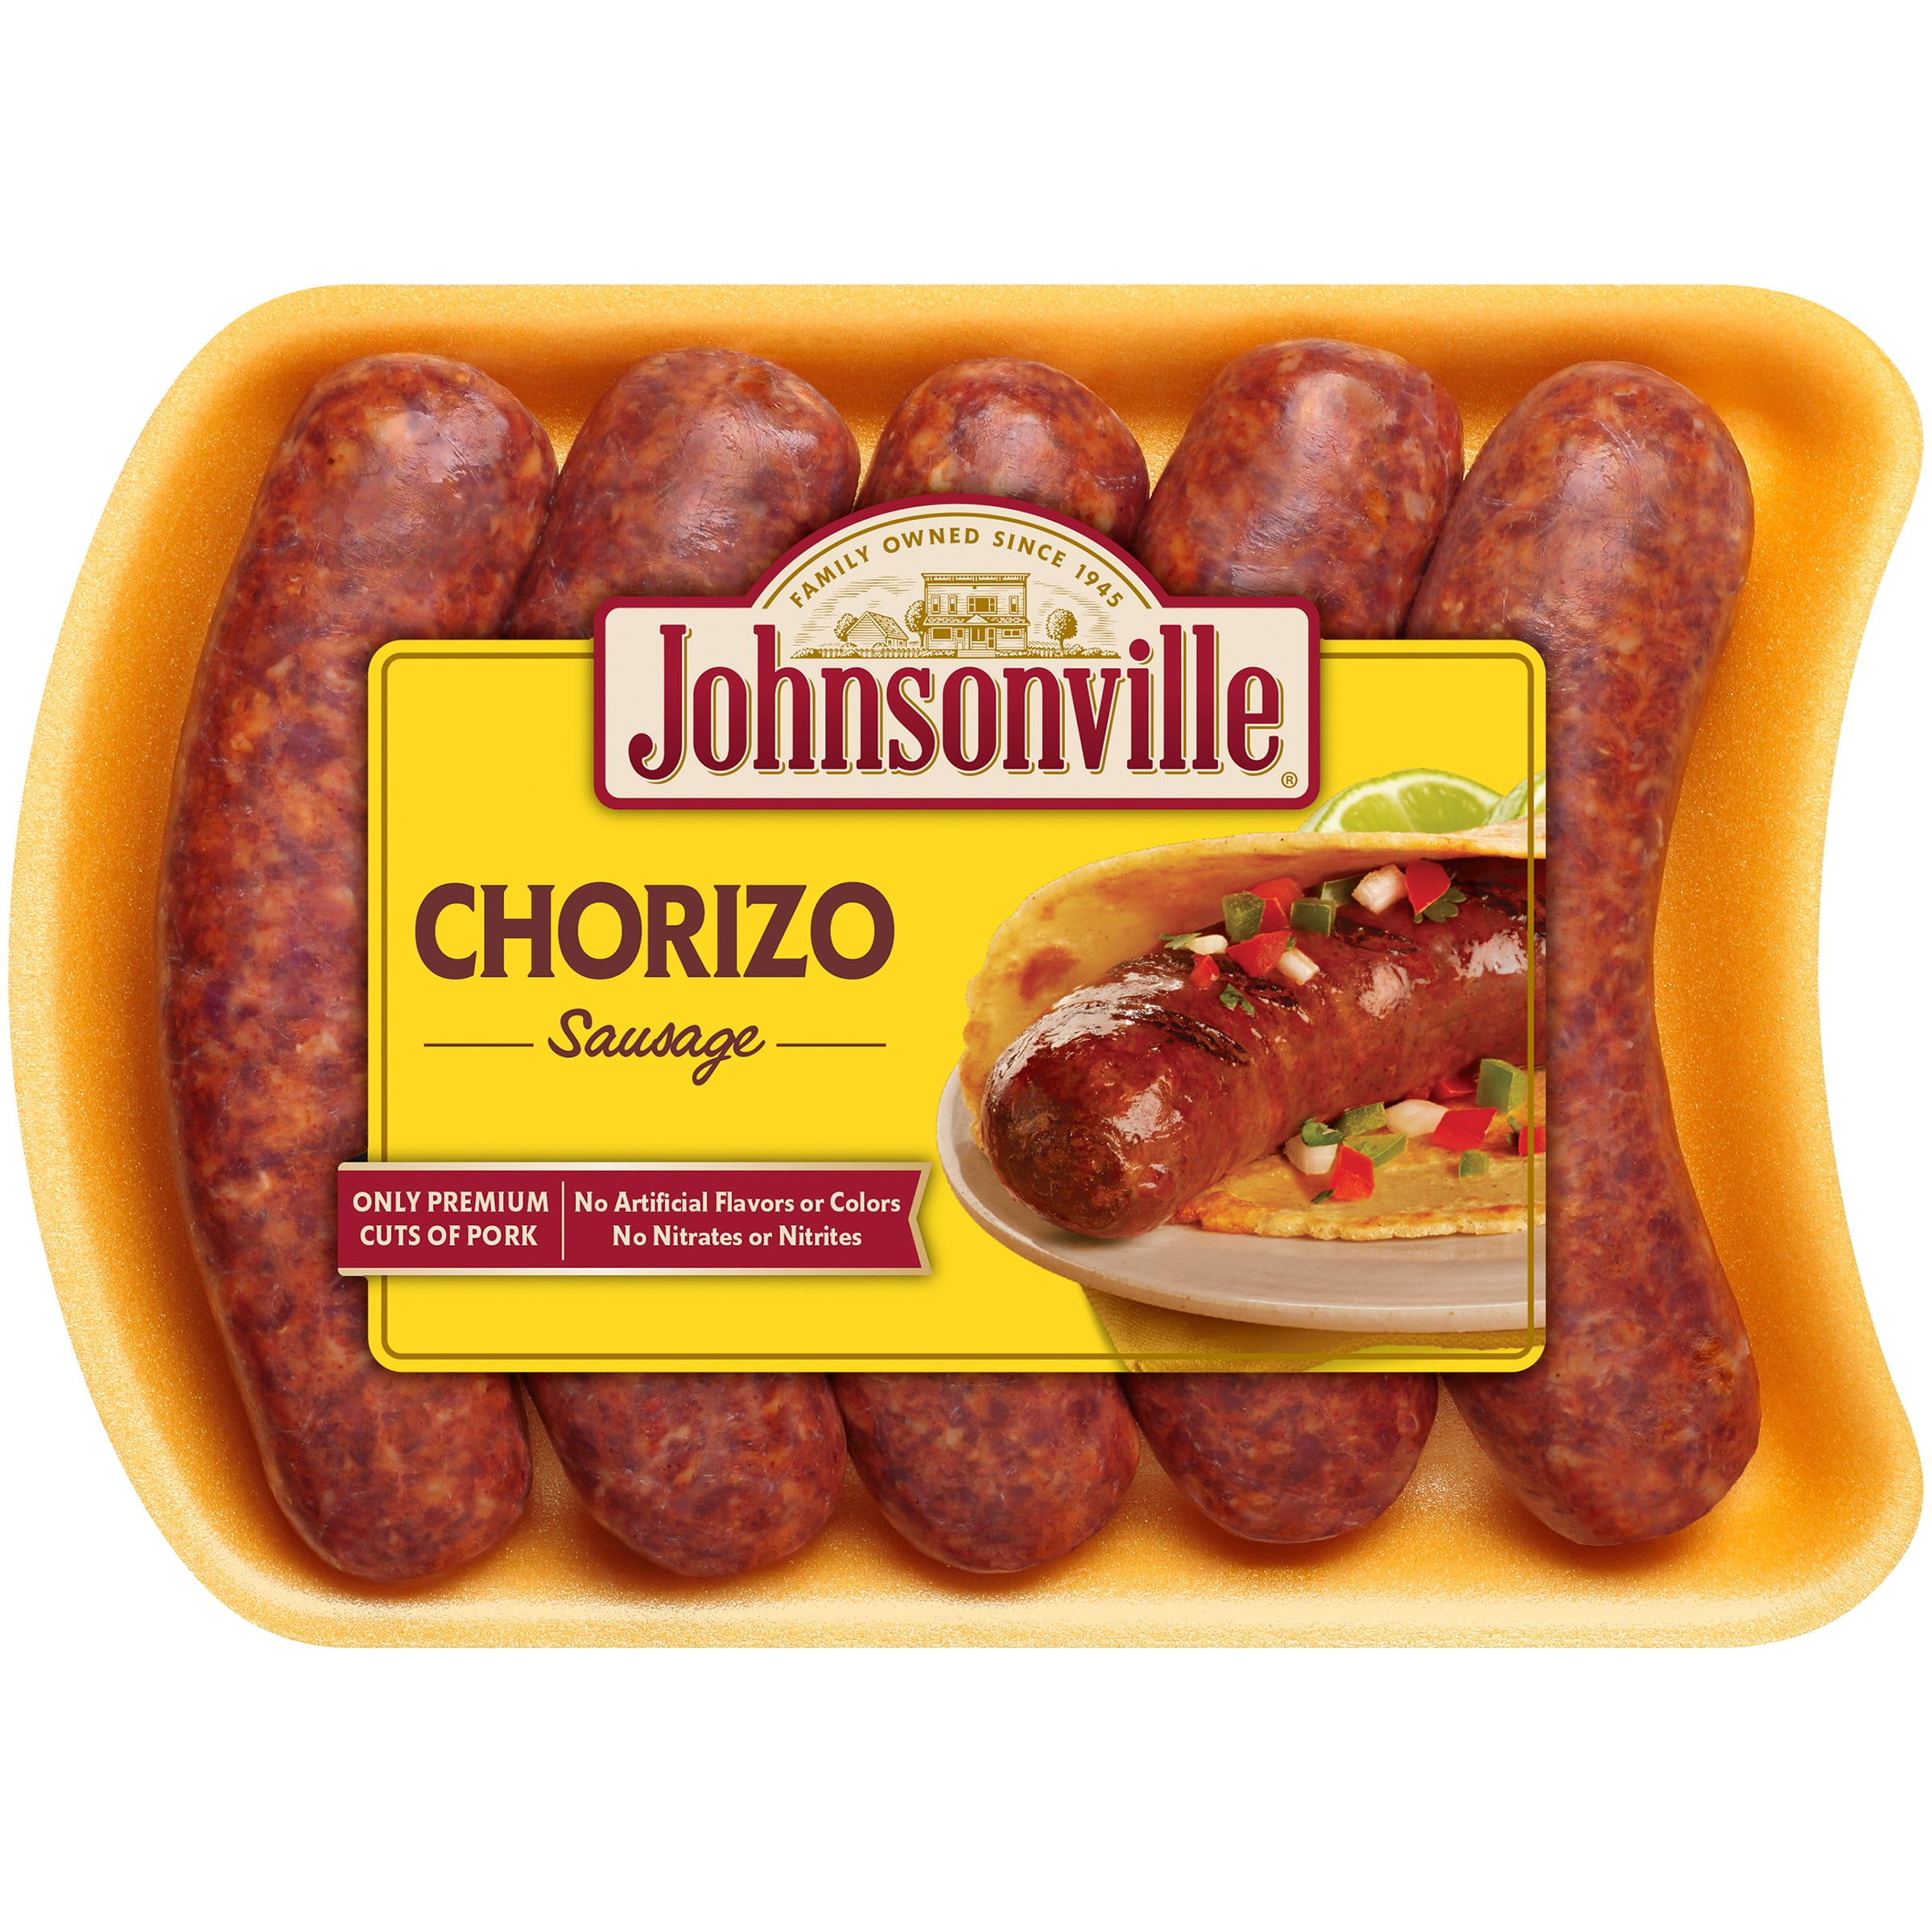 Johnsonville Chorizo Sausage, 5 Links 